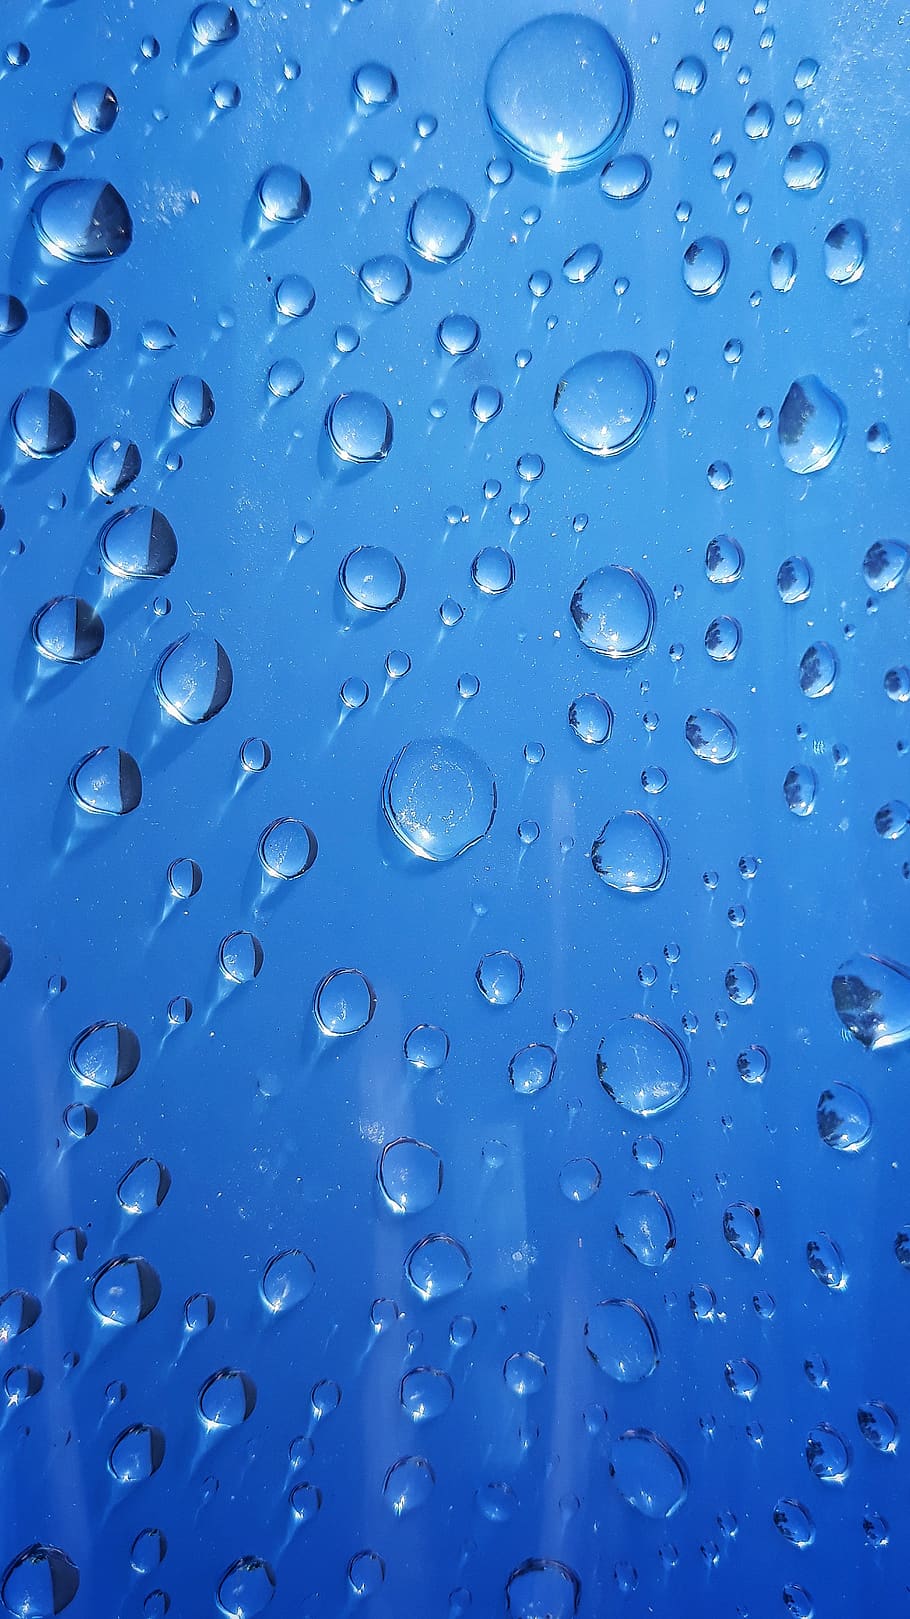 wet, rain, dew, drop, turquoise, waterdrop, liquid, clean, purity, liquidity